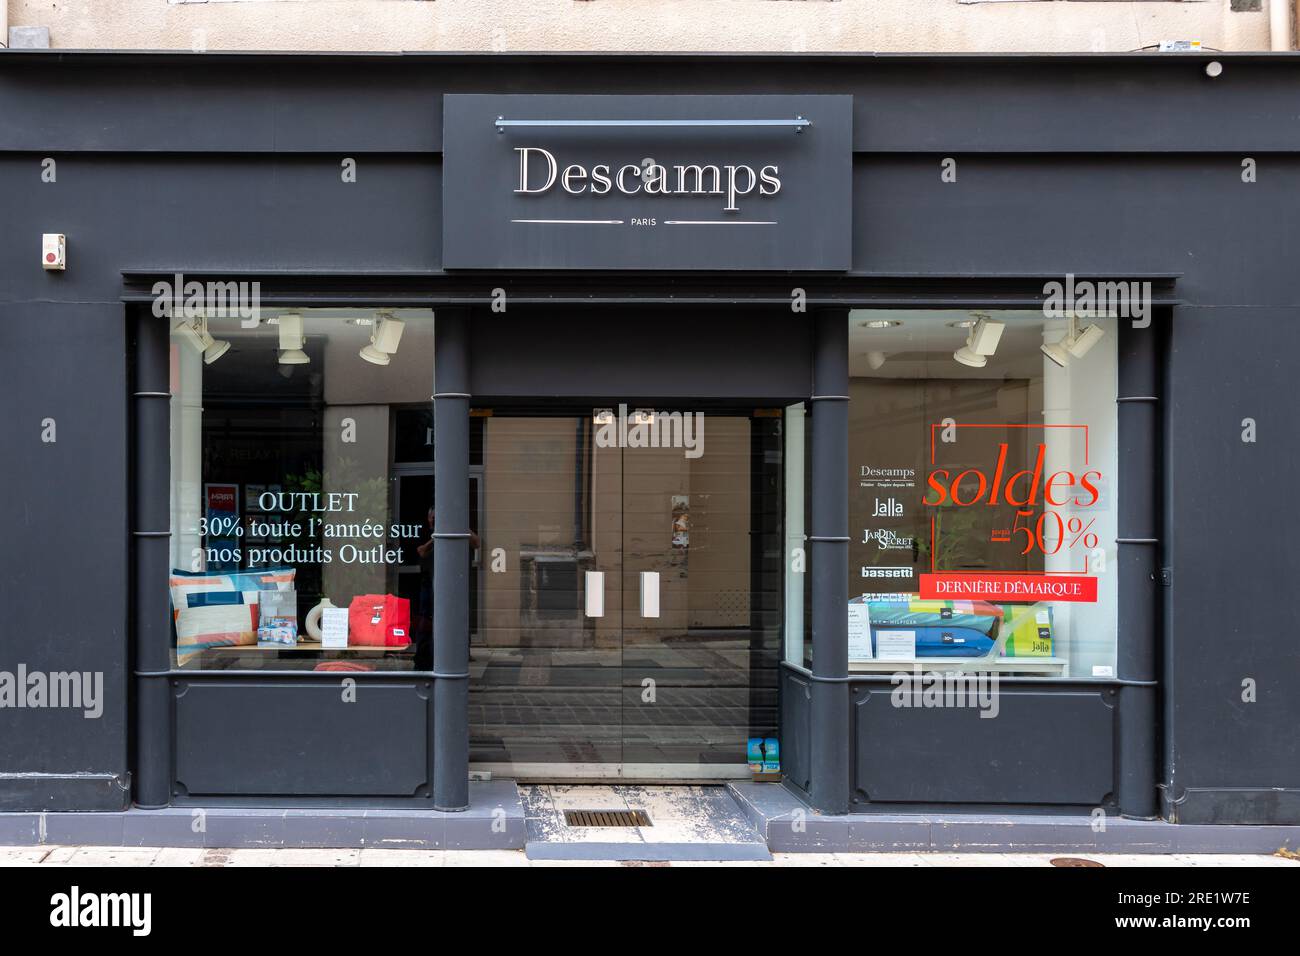 Außenansicht einer Descamps-Boutique. Descamps ist ein französisches Textilunternehmen, das Haushaltswäsche (Bettwäsche, Handtücher usw.) herstellt und vermarktet. Stockfoto